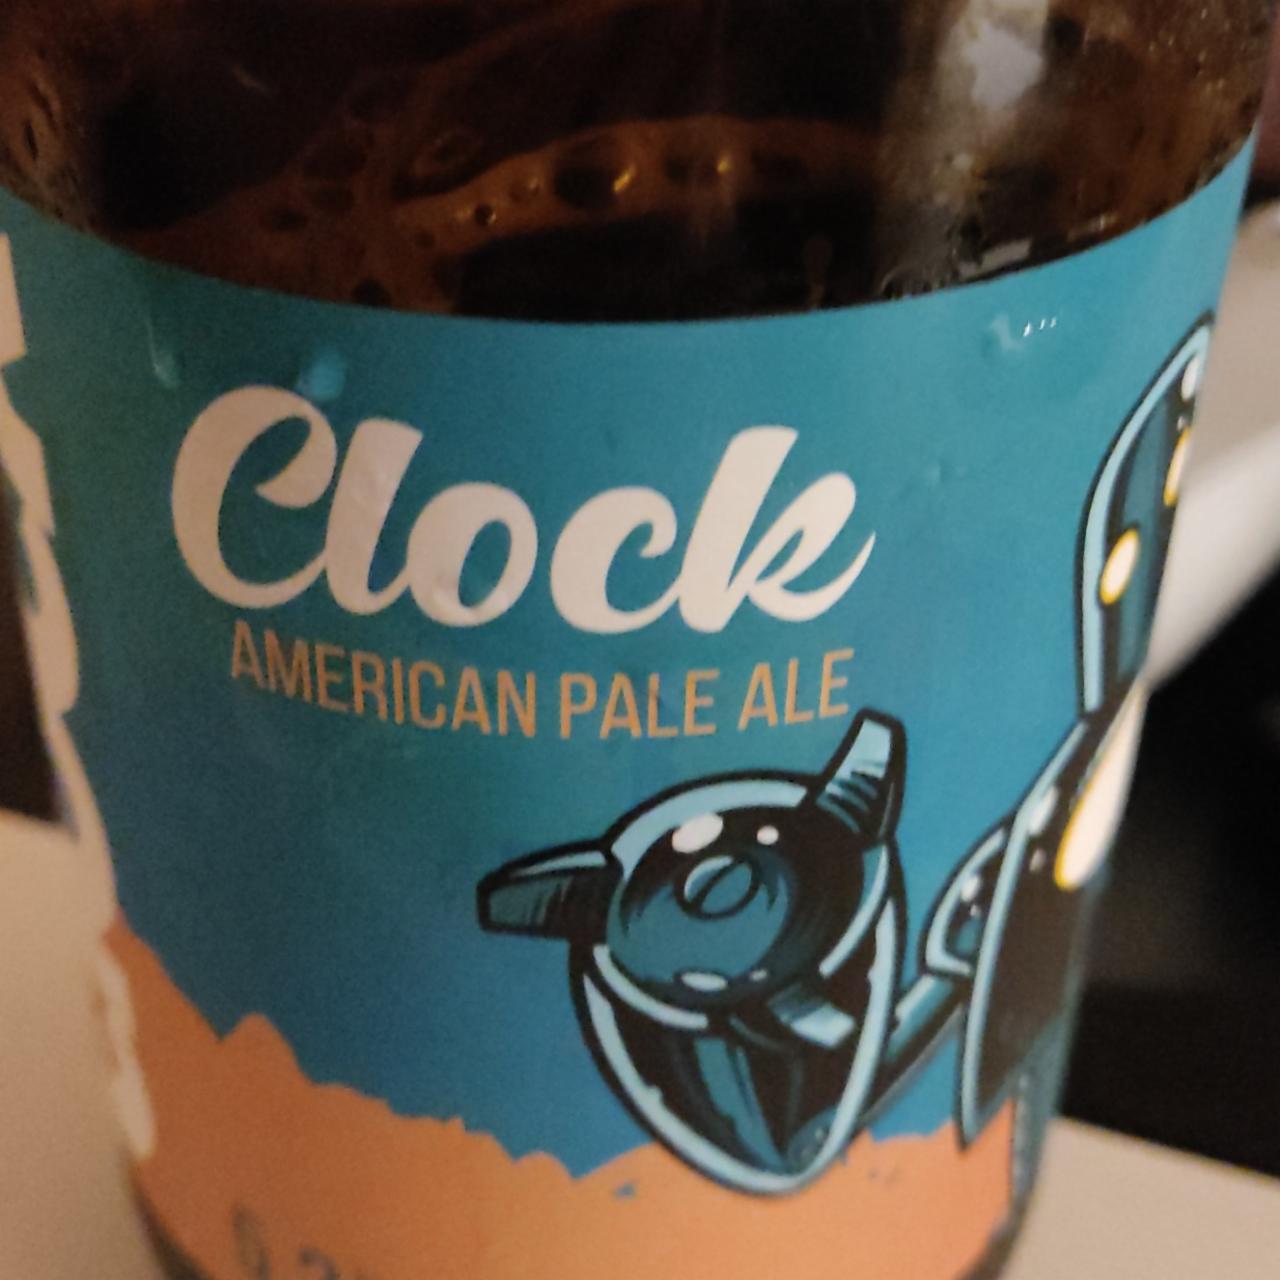 Fotografie - clock american pale ale Clock